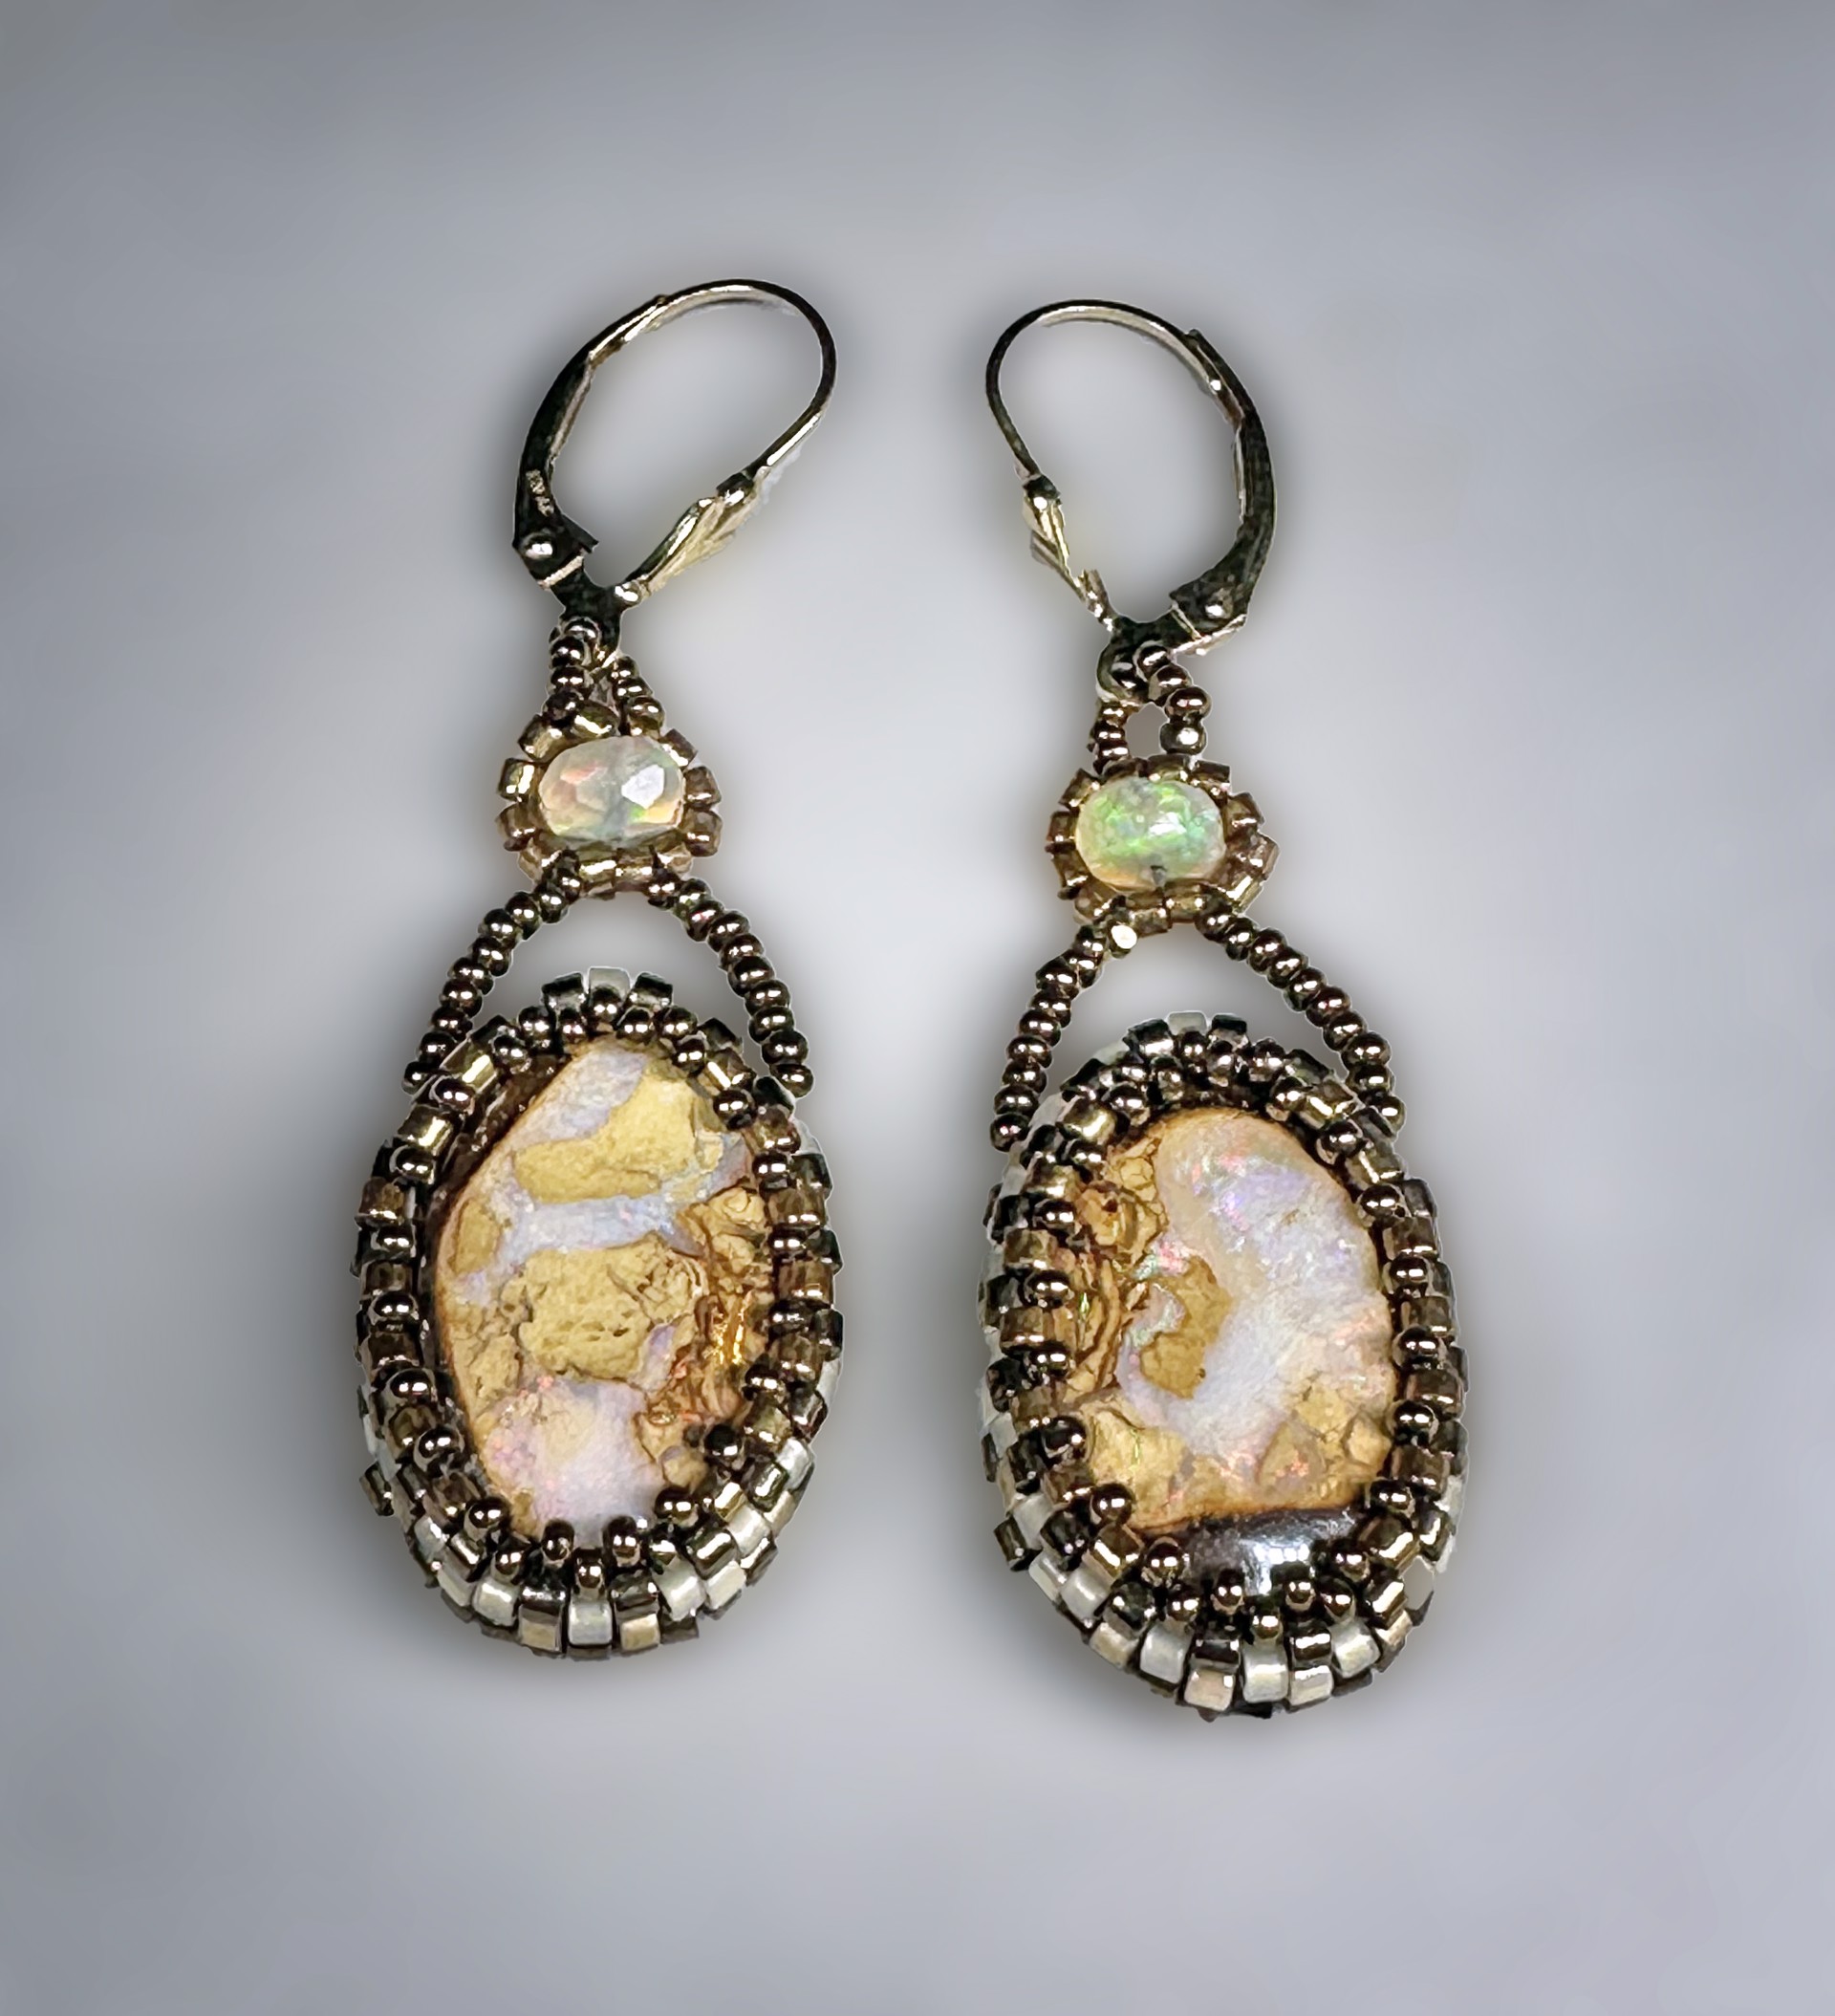 Koroit Boulder Opal Earrings by Nina Vidal